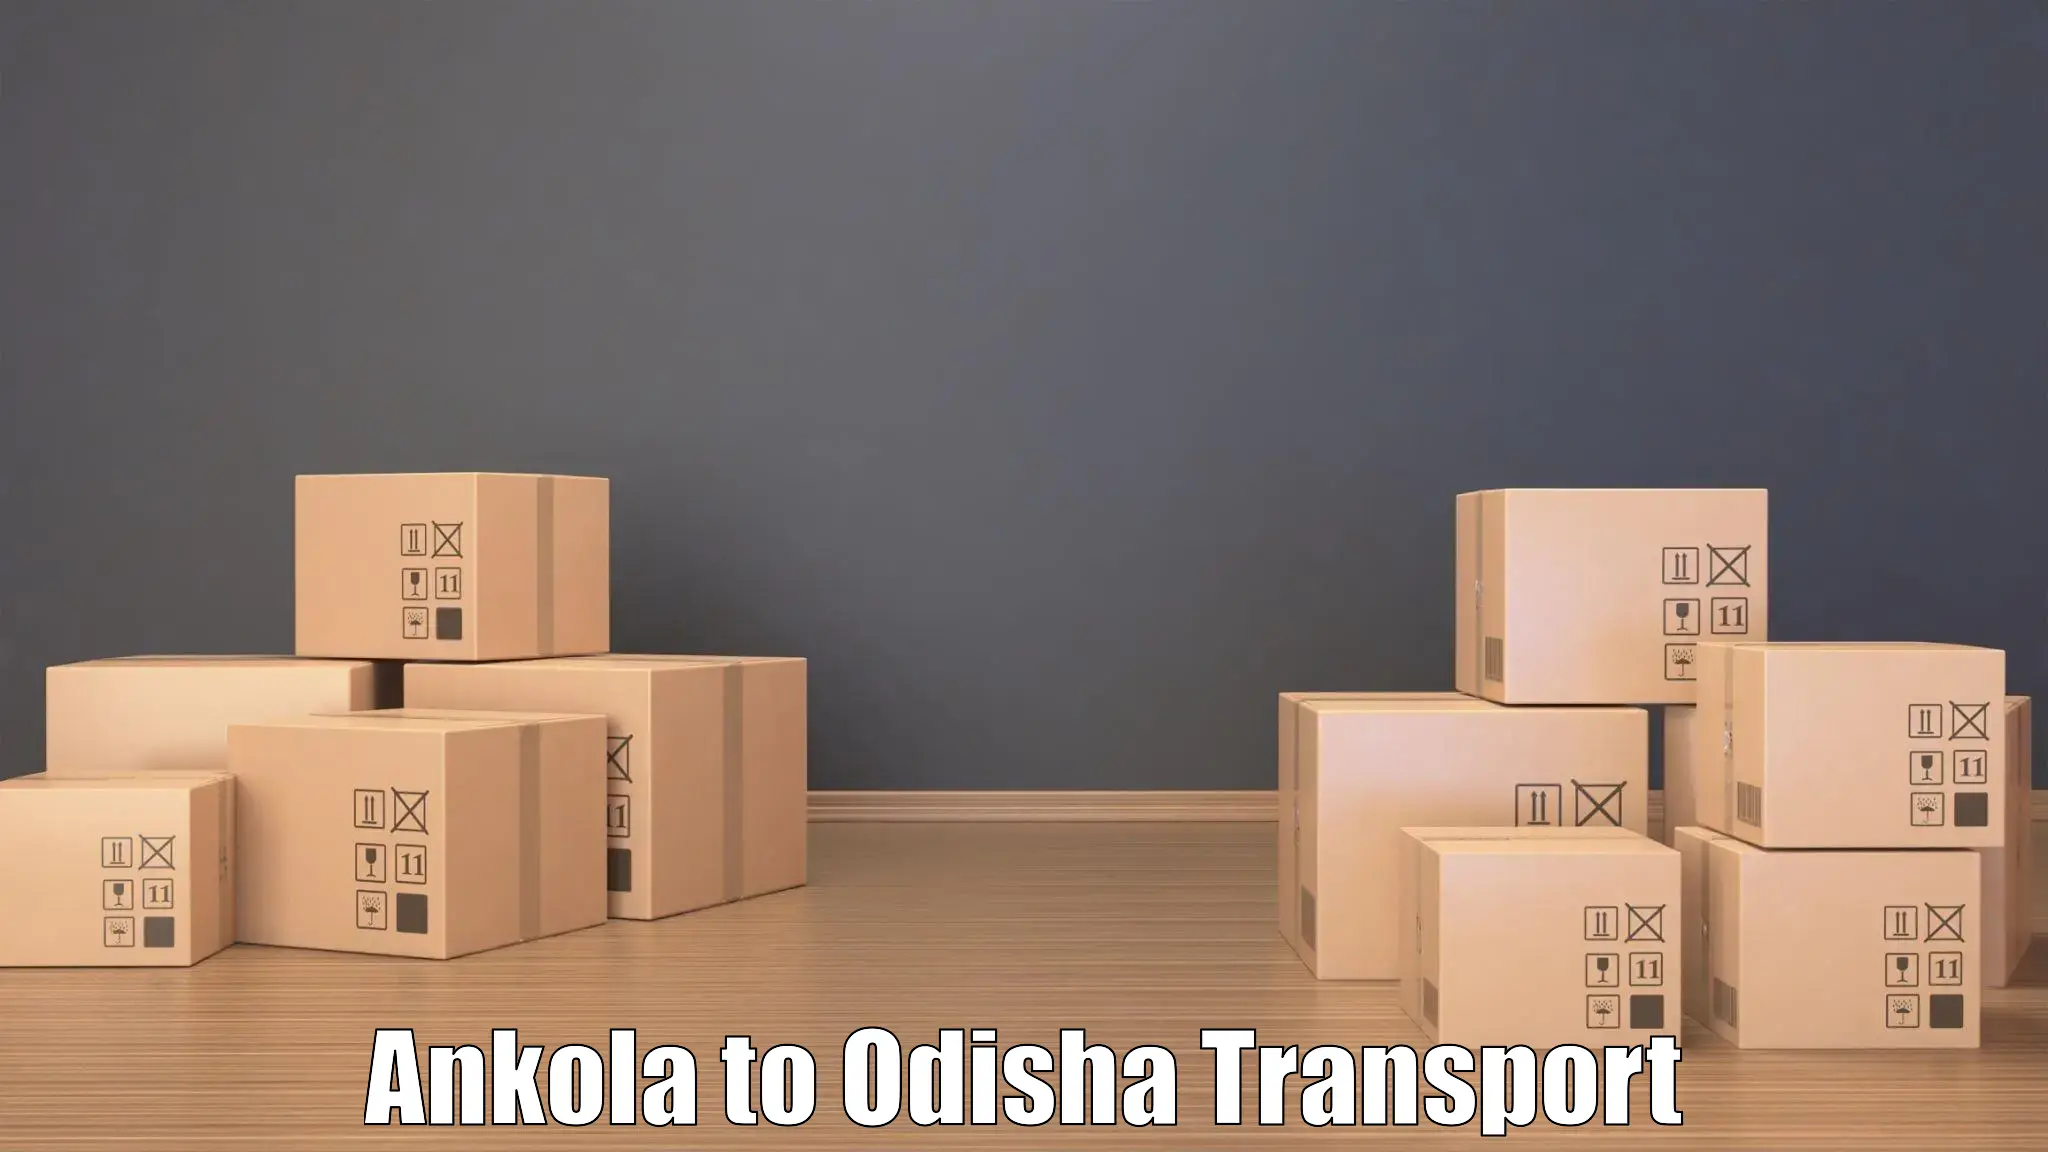 Cargo train transport services Ankola to Odisha